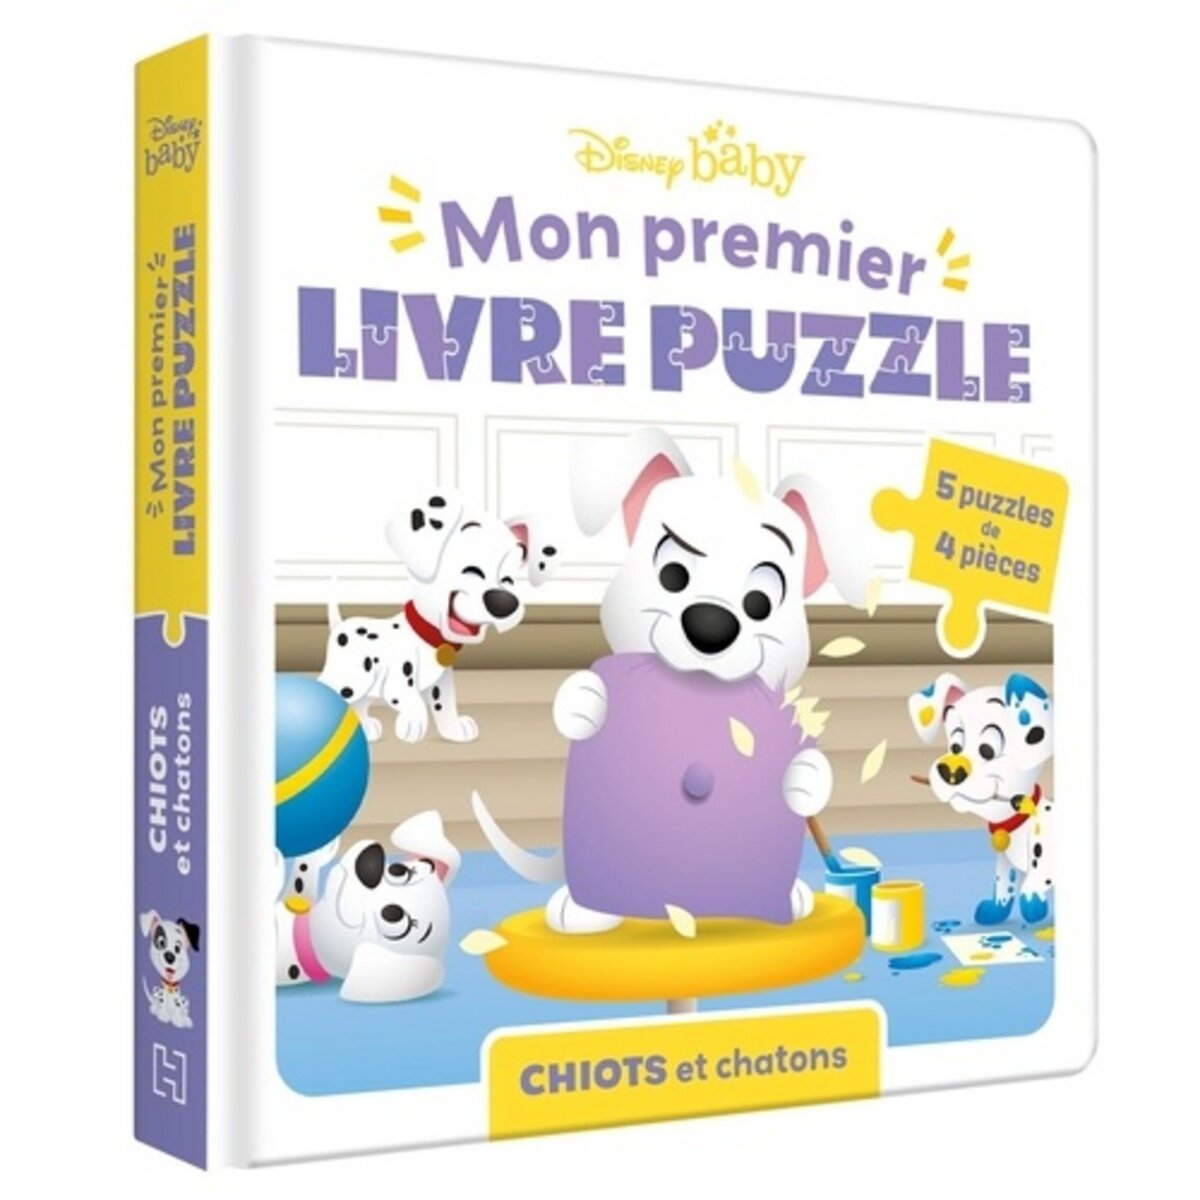 MON PREMIER LIVRE PUZZLE. 5 PUZZLES DE 4 PIECES - CHIOTS ET CHATONS, Disney  pas cher 